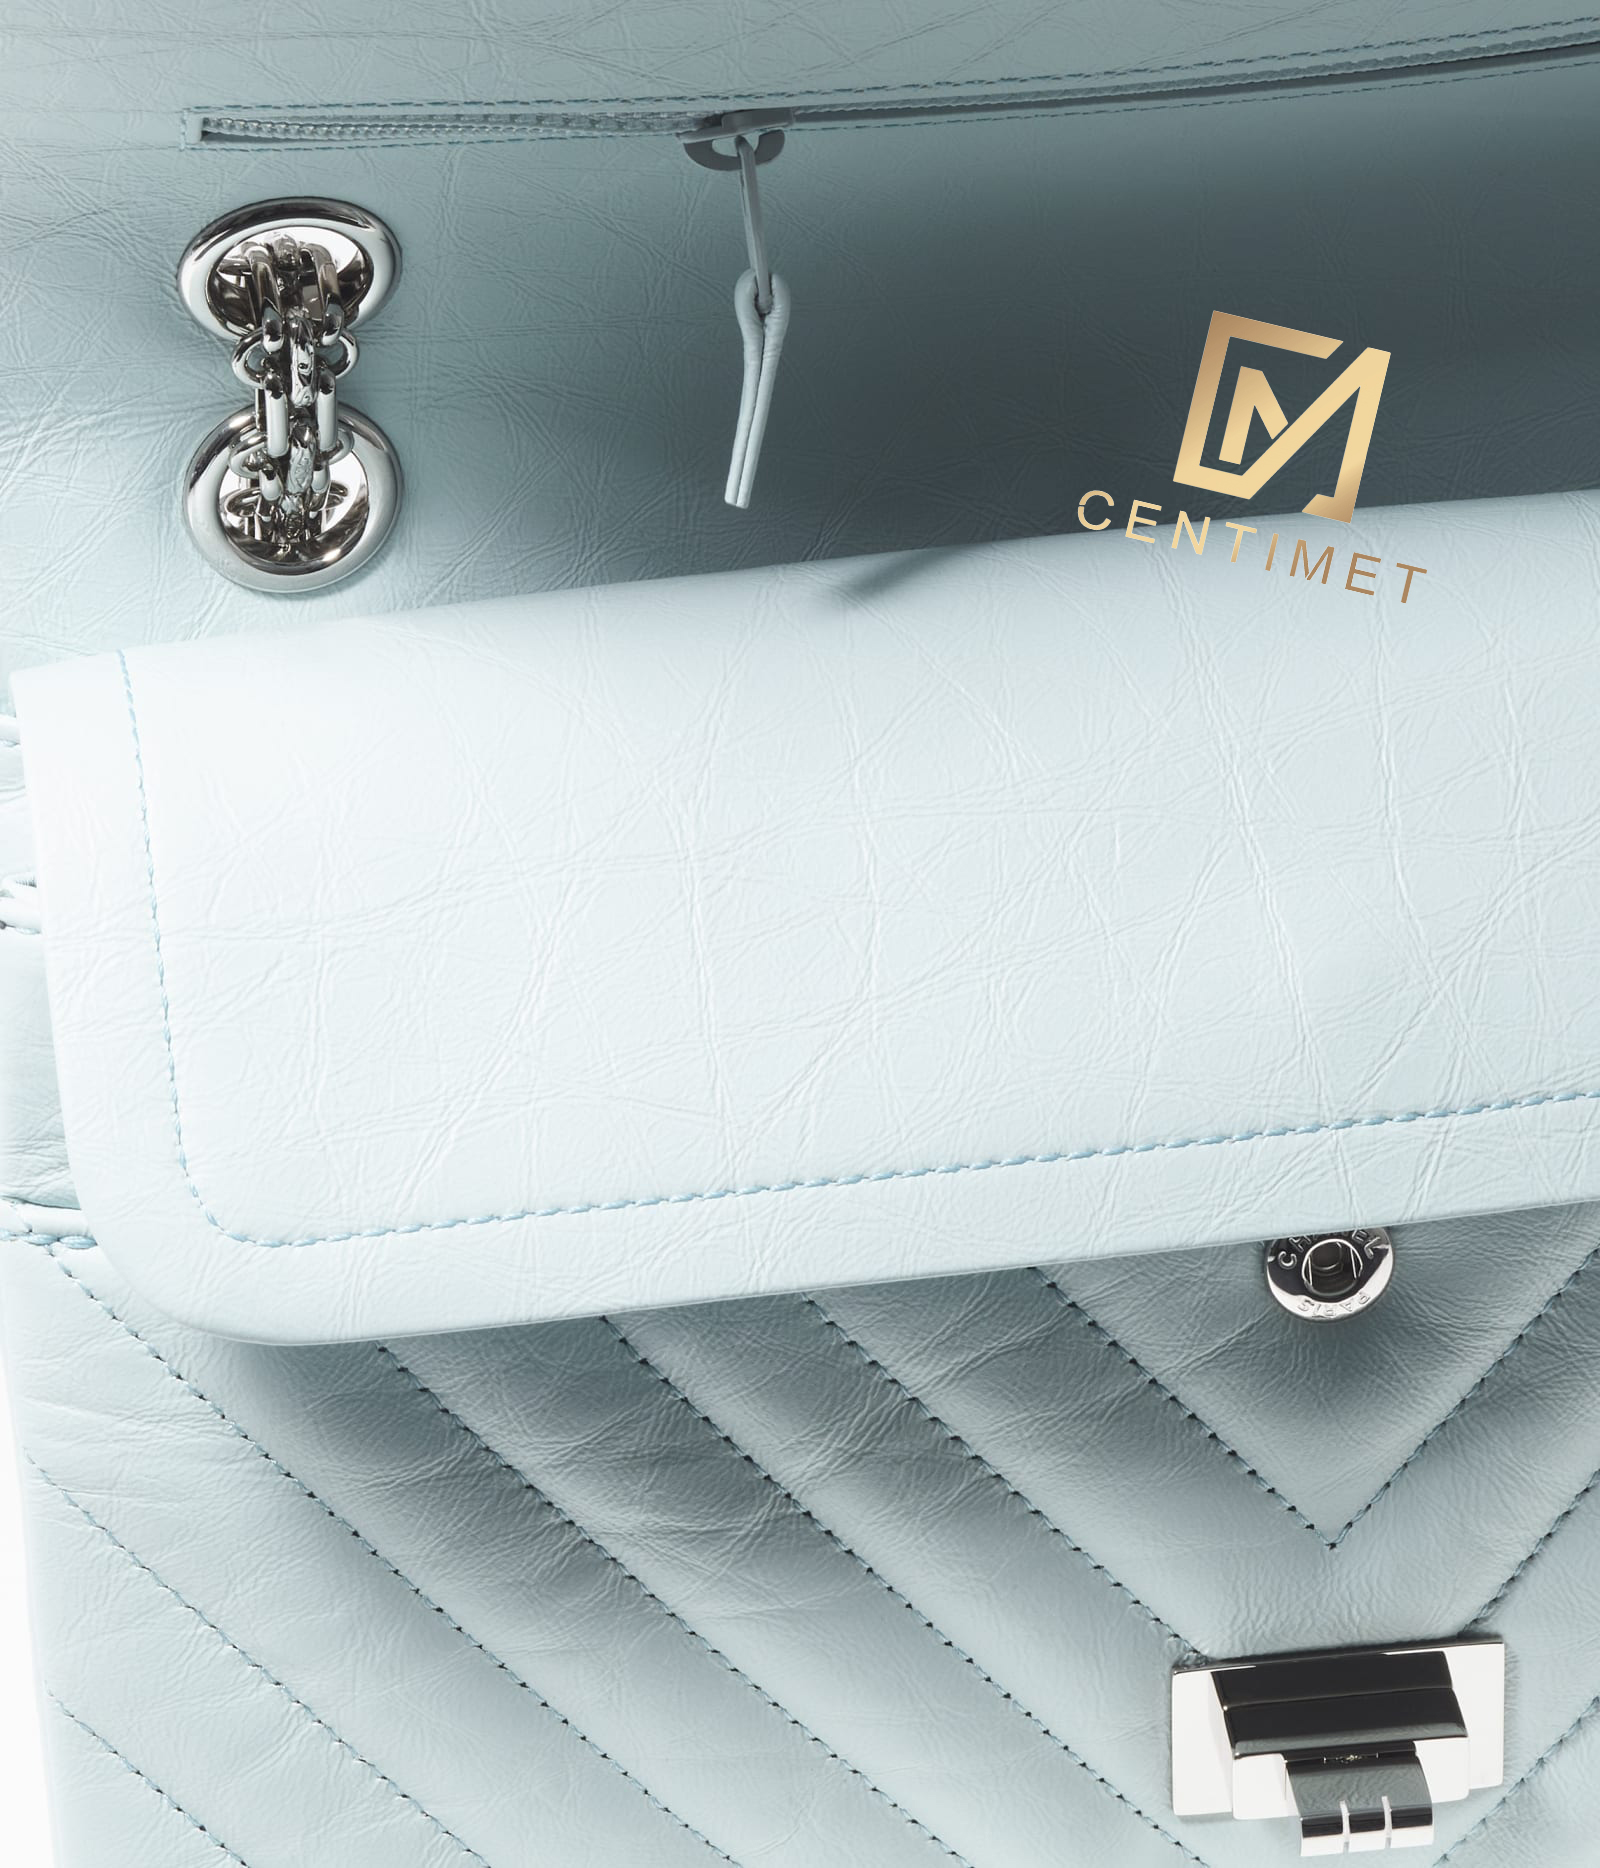 2-55-handbag-light-blue-aged-calfskin-silver-tone-metal-aged-calfskin-silver-tone-metal-packshot-artistique-vue1-a37586b06751nf290-8845492518942